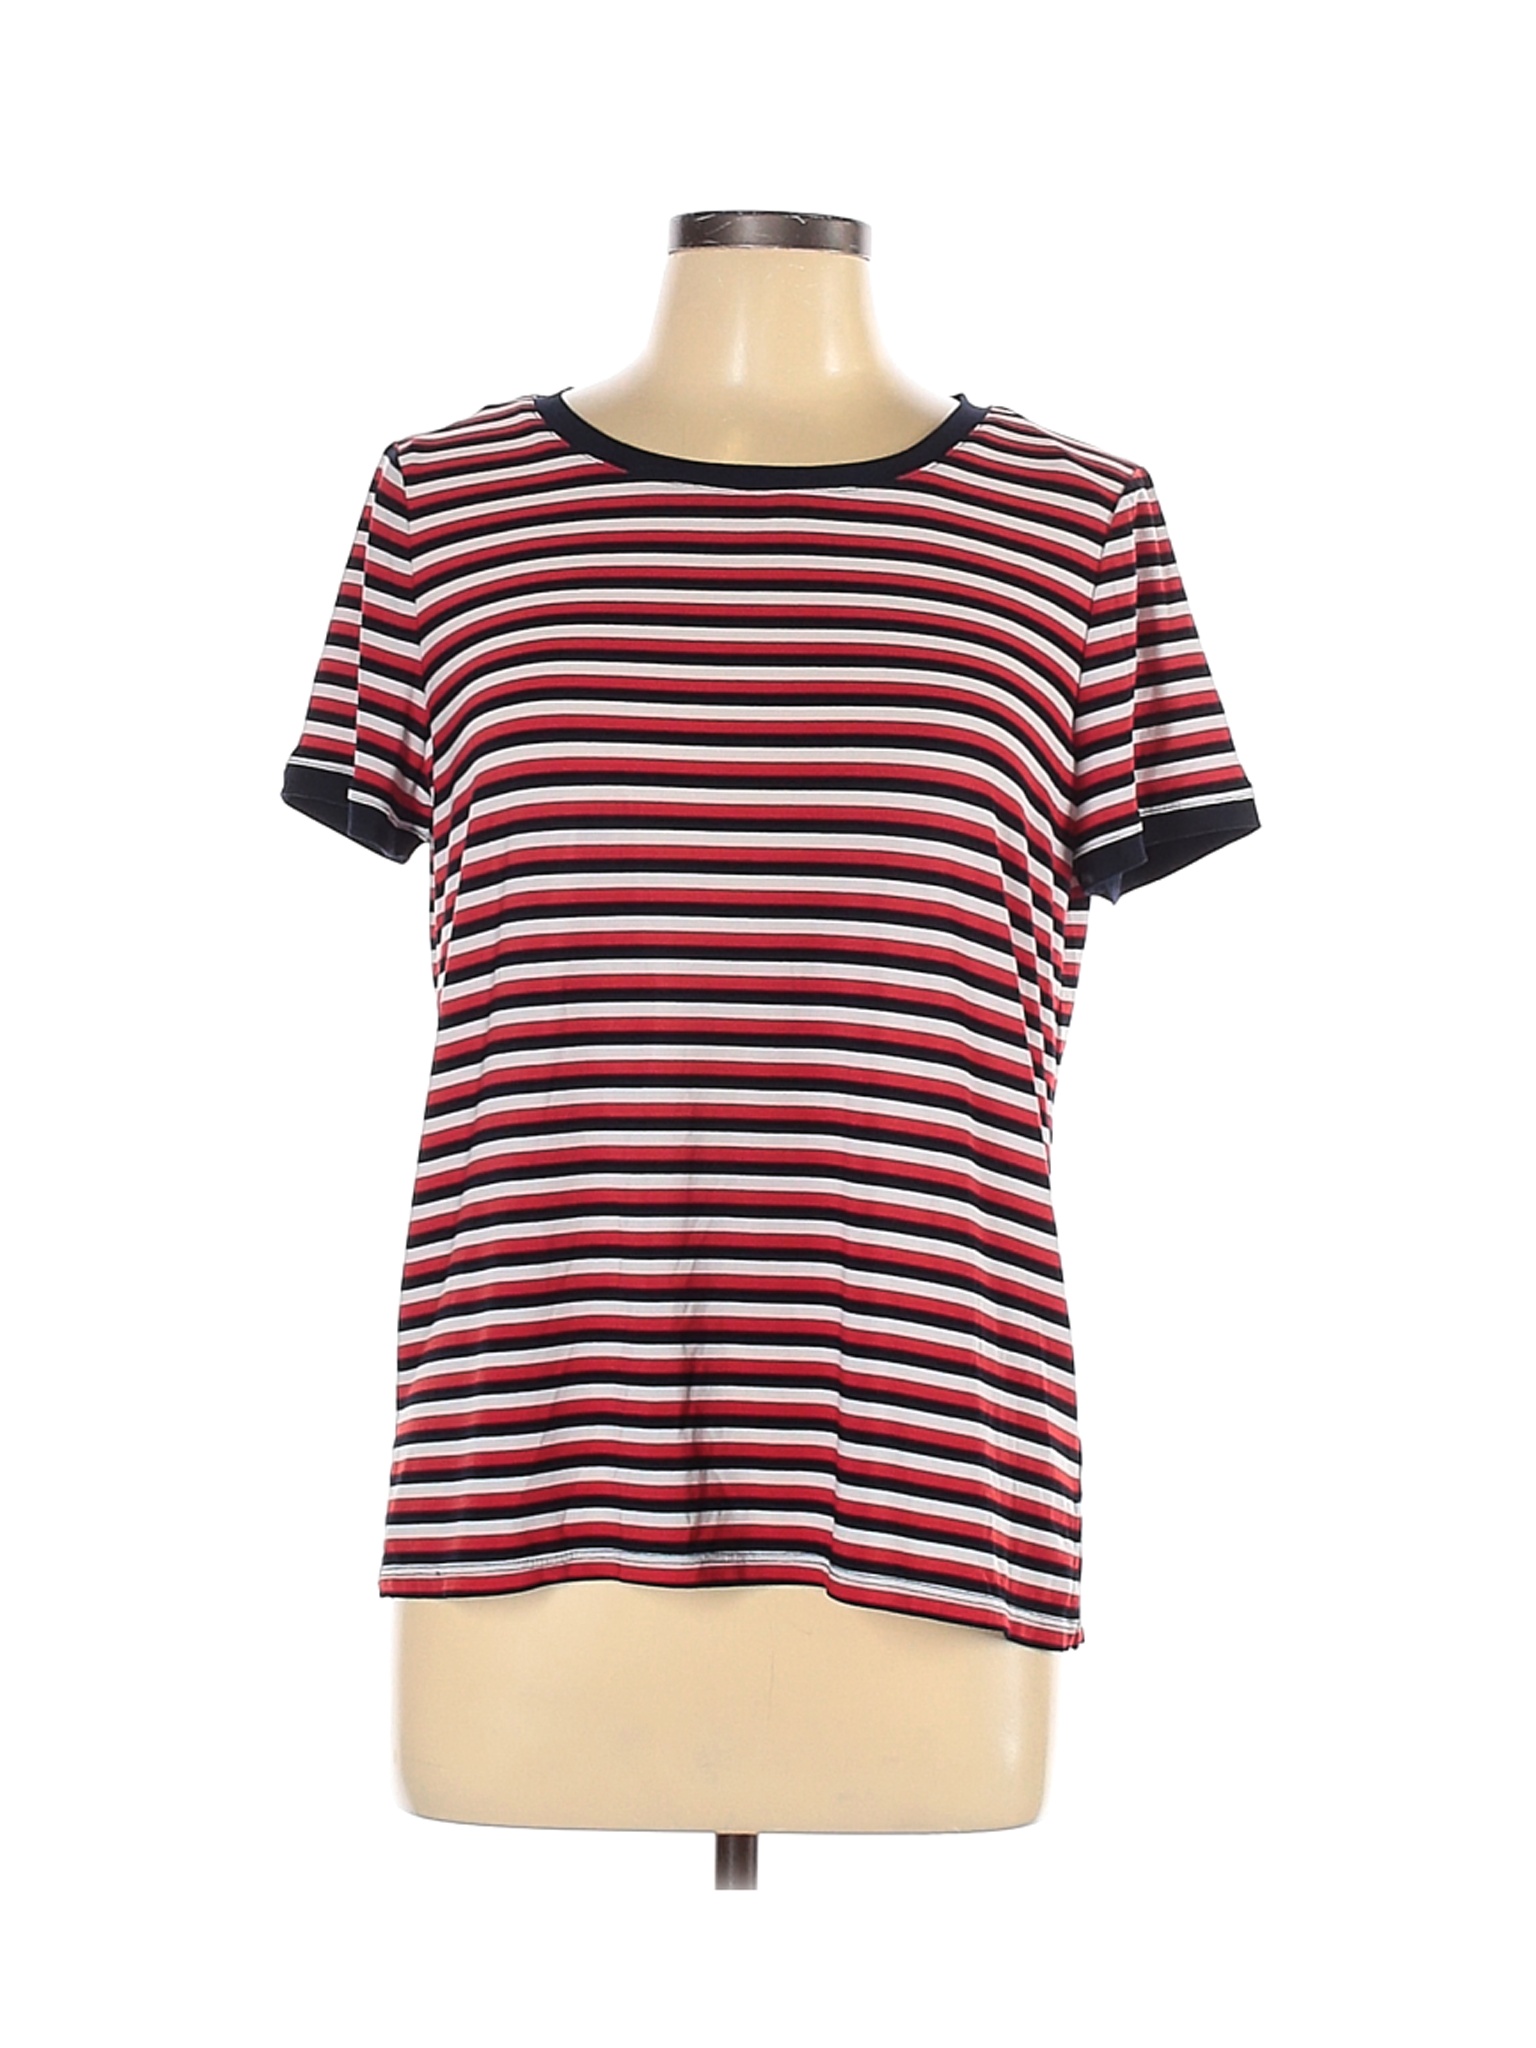 Anne Klein Women Red Short Sleeve T-Shirt L | eBay